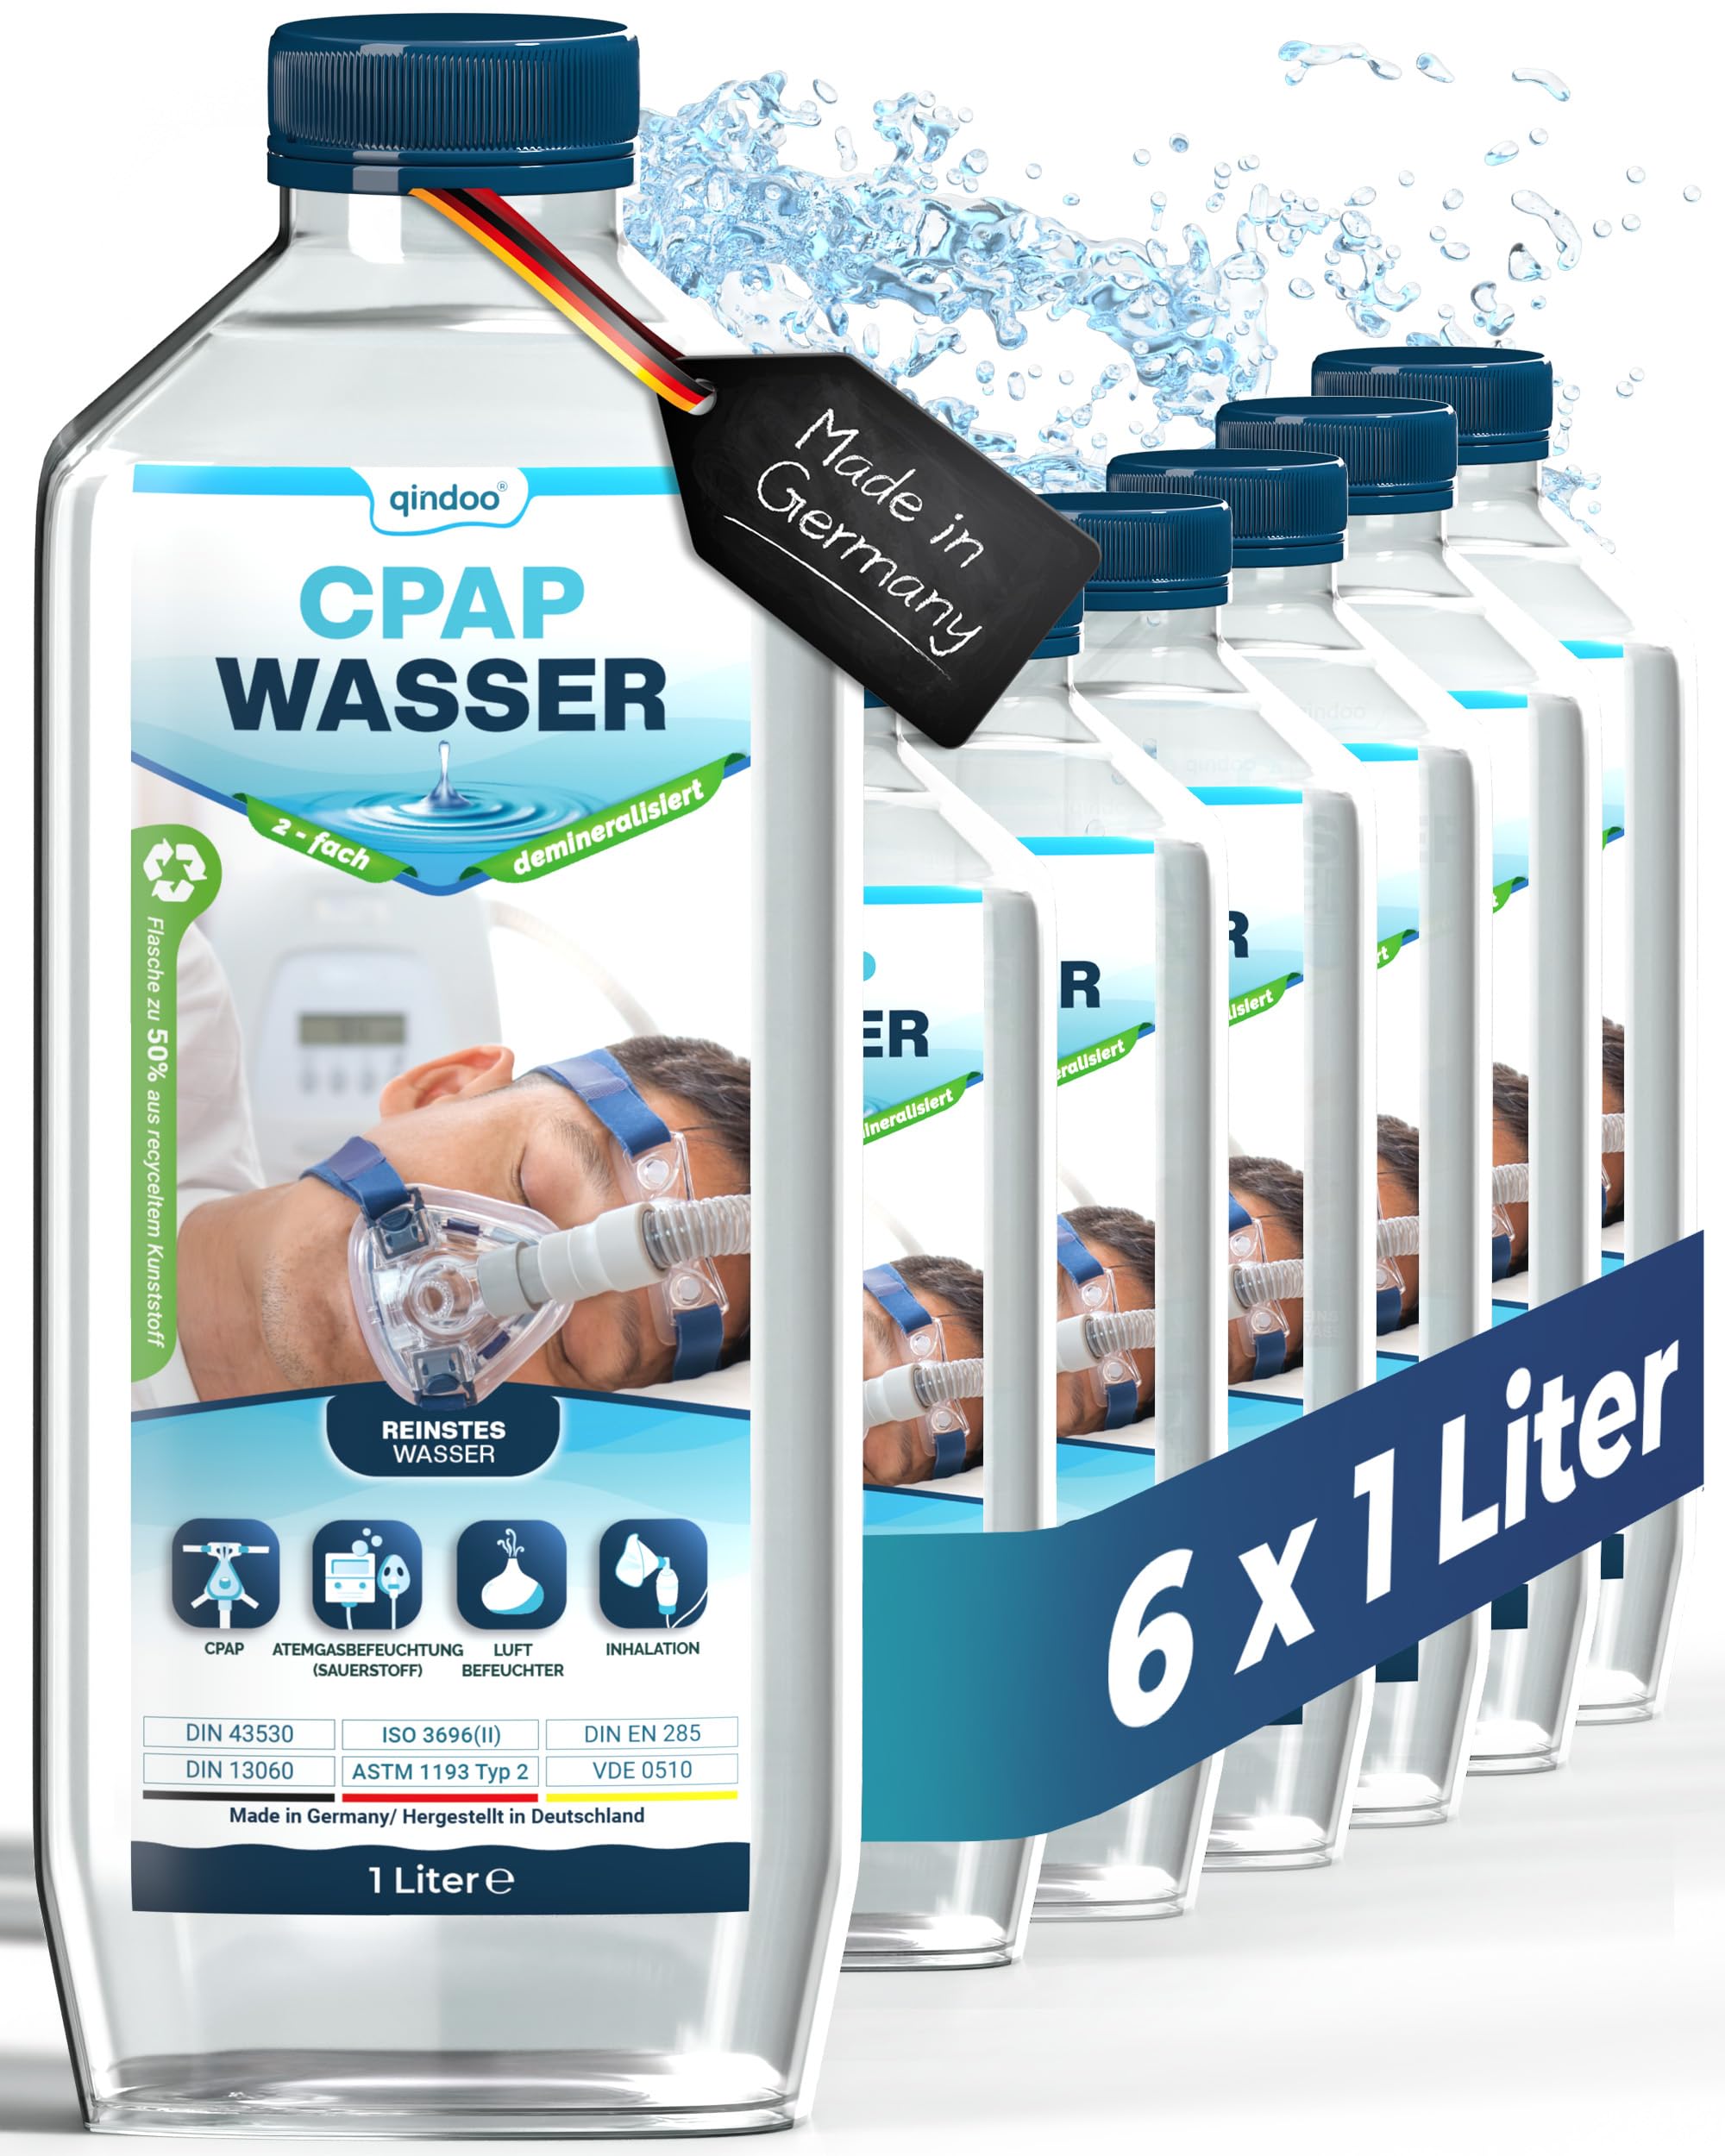 6x Qindoo CPAP Wasser I bidest Wasser für Sauerstoffgerät, Inhalator, Luftbefeuchter, Verdampfer, Bedampfer, Atemgas-Befeuchtung CPAP Geräte (6 Liter)